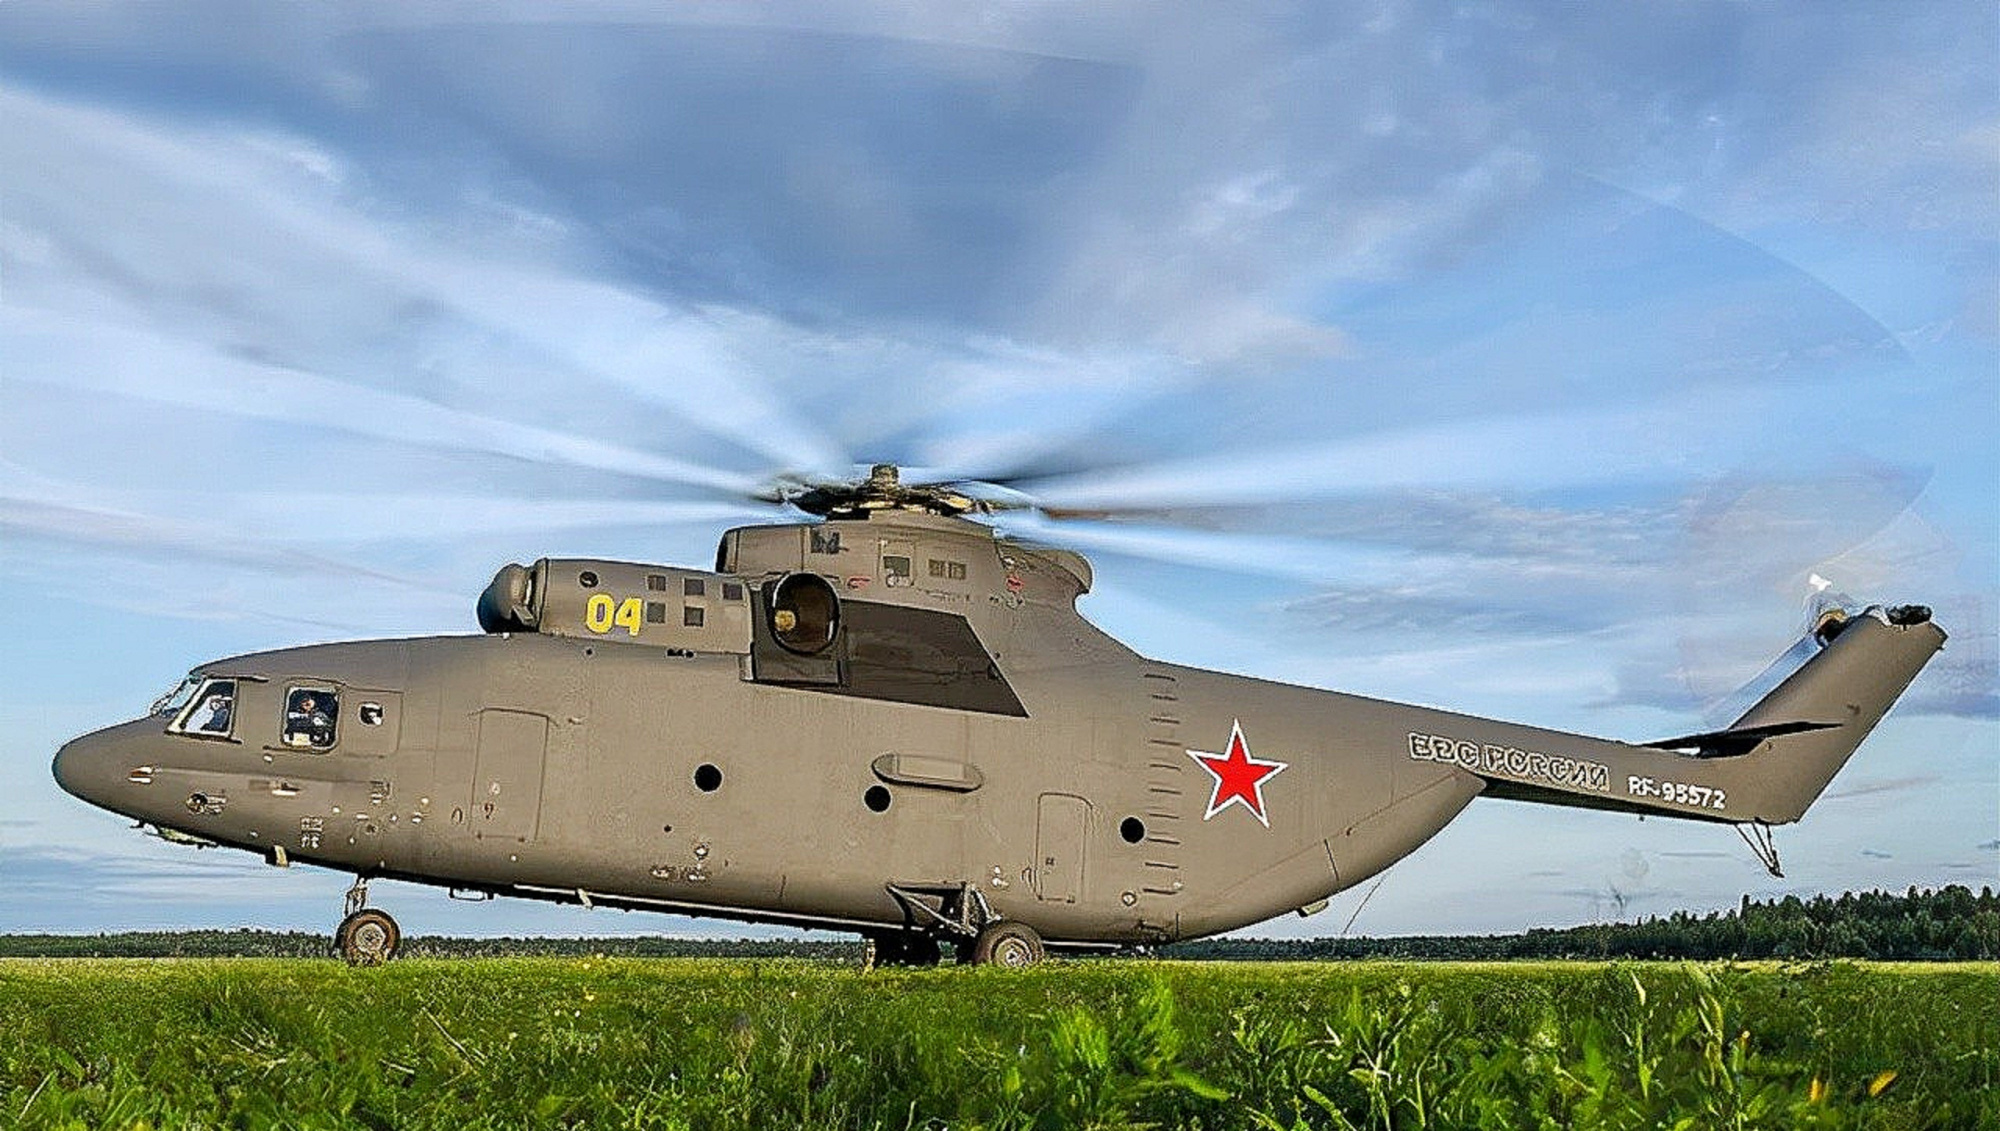 全球最大的米26直升机有多大?载重56吨,超美国c130固定翼运输机